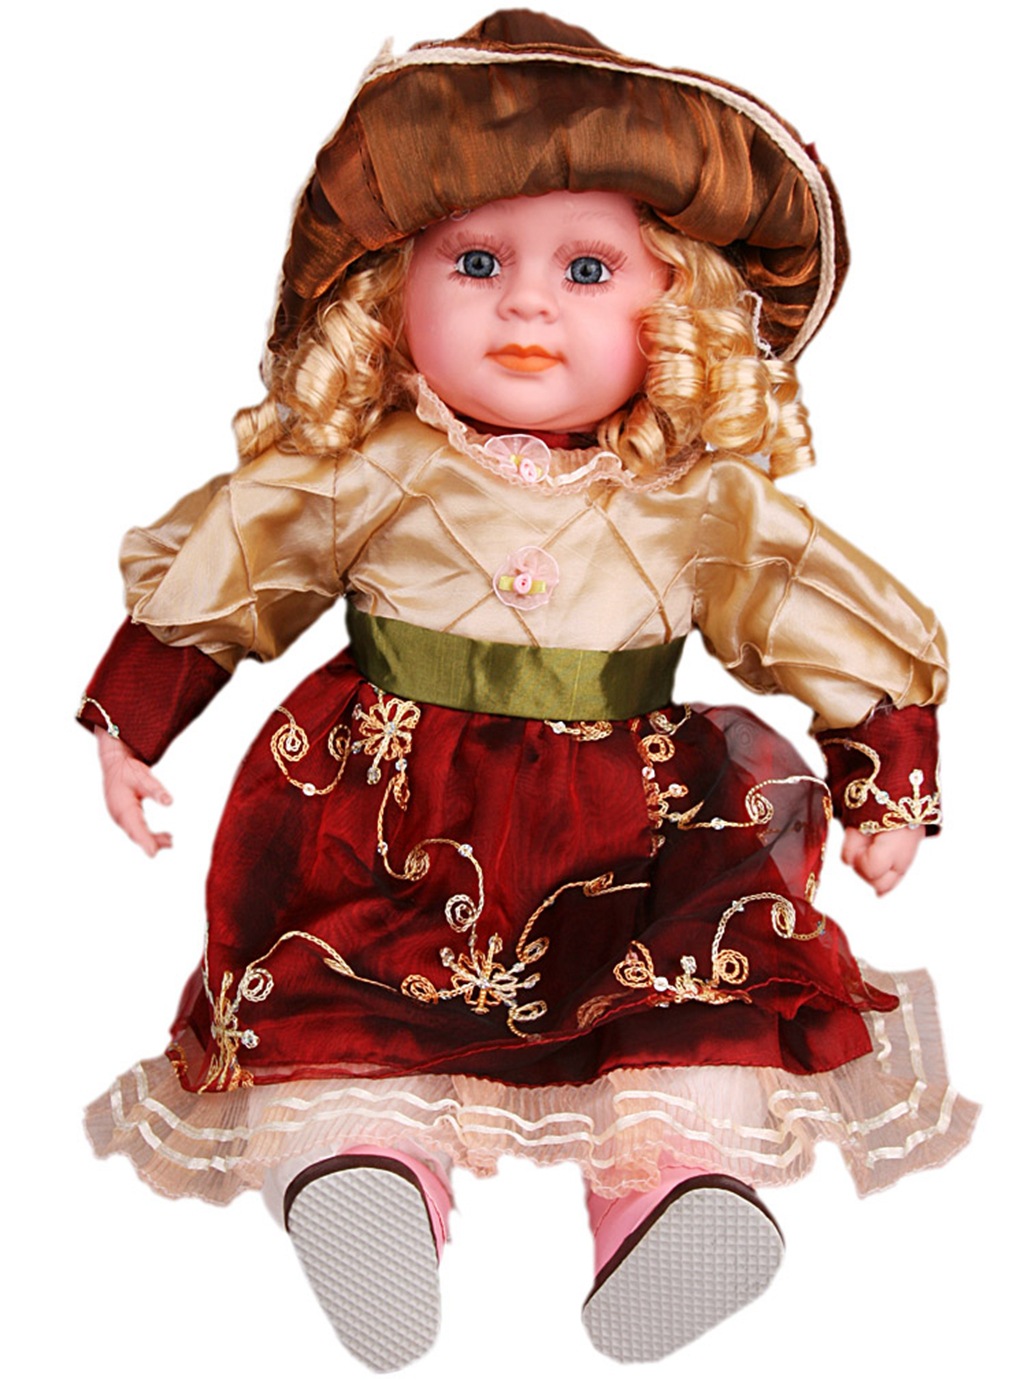 厂家直销 50厘米仿真音乐娃娃 玩偶布娃娃 早教玩具